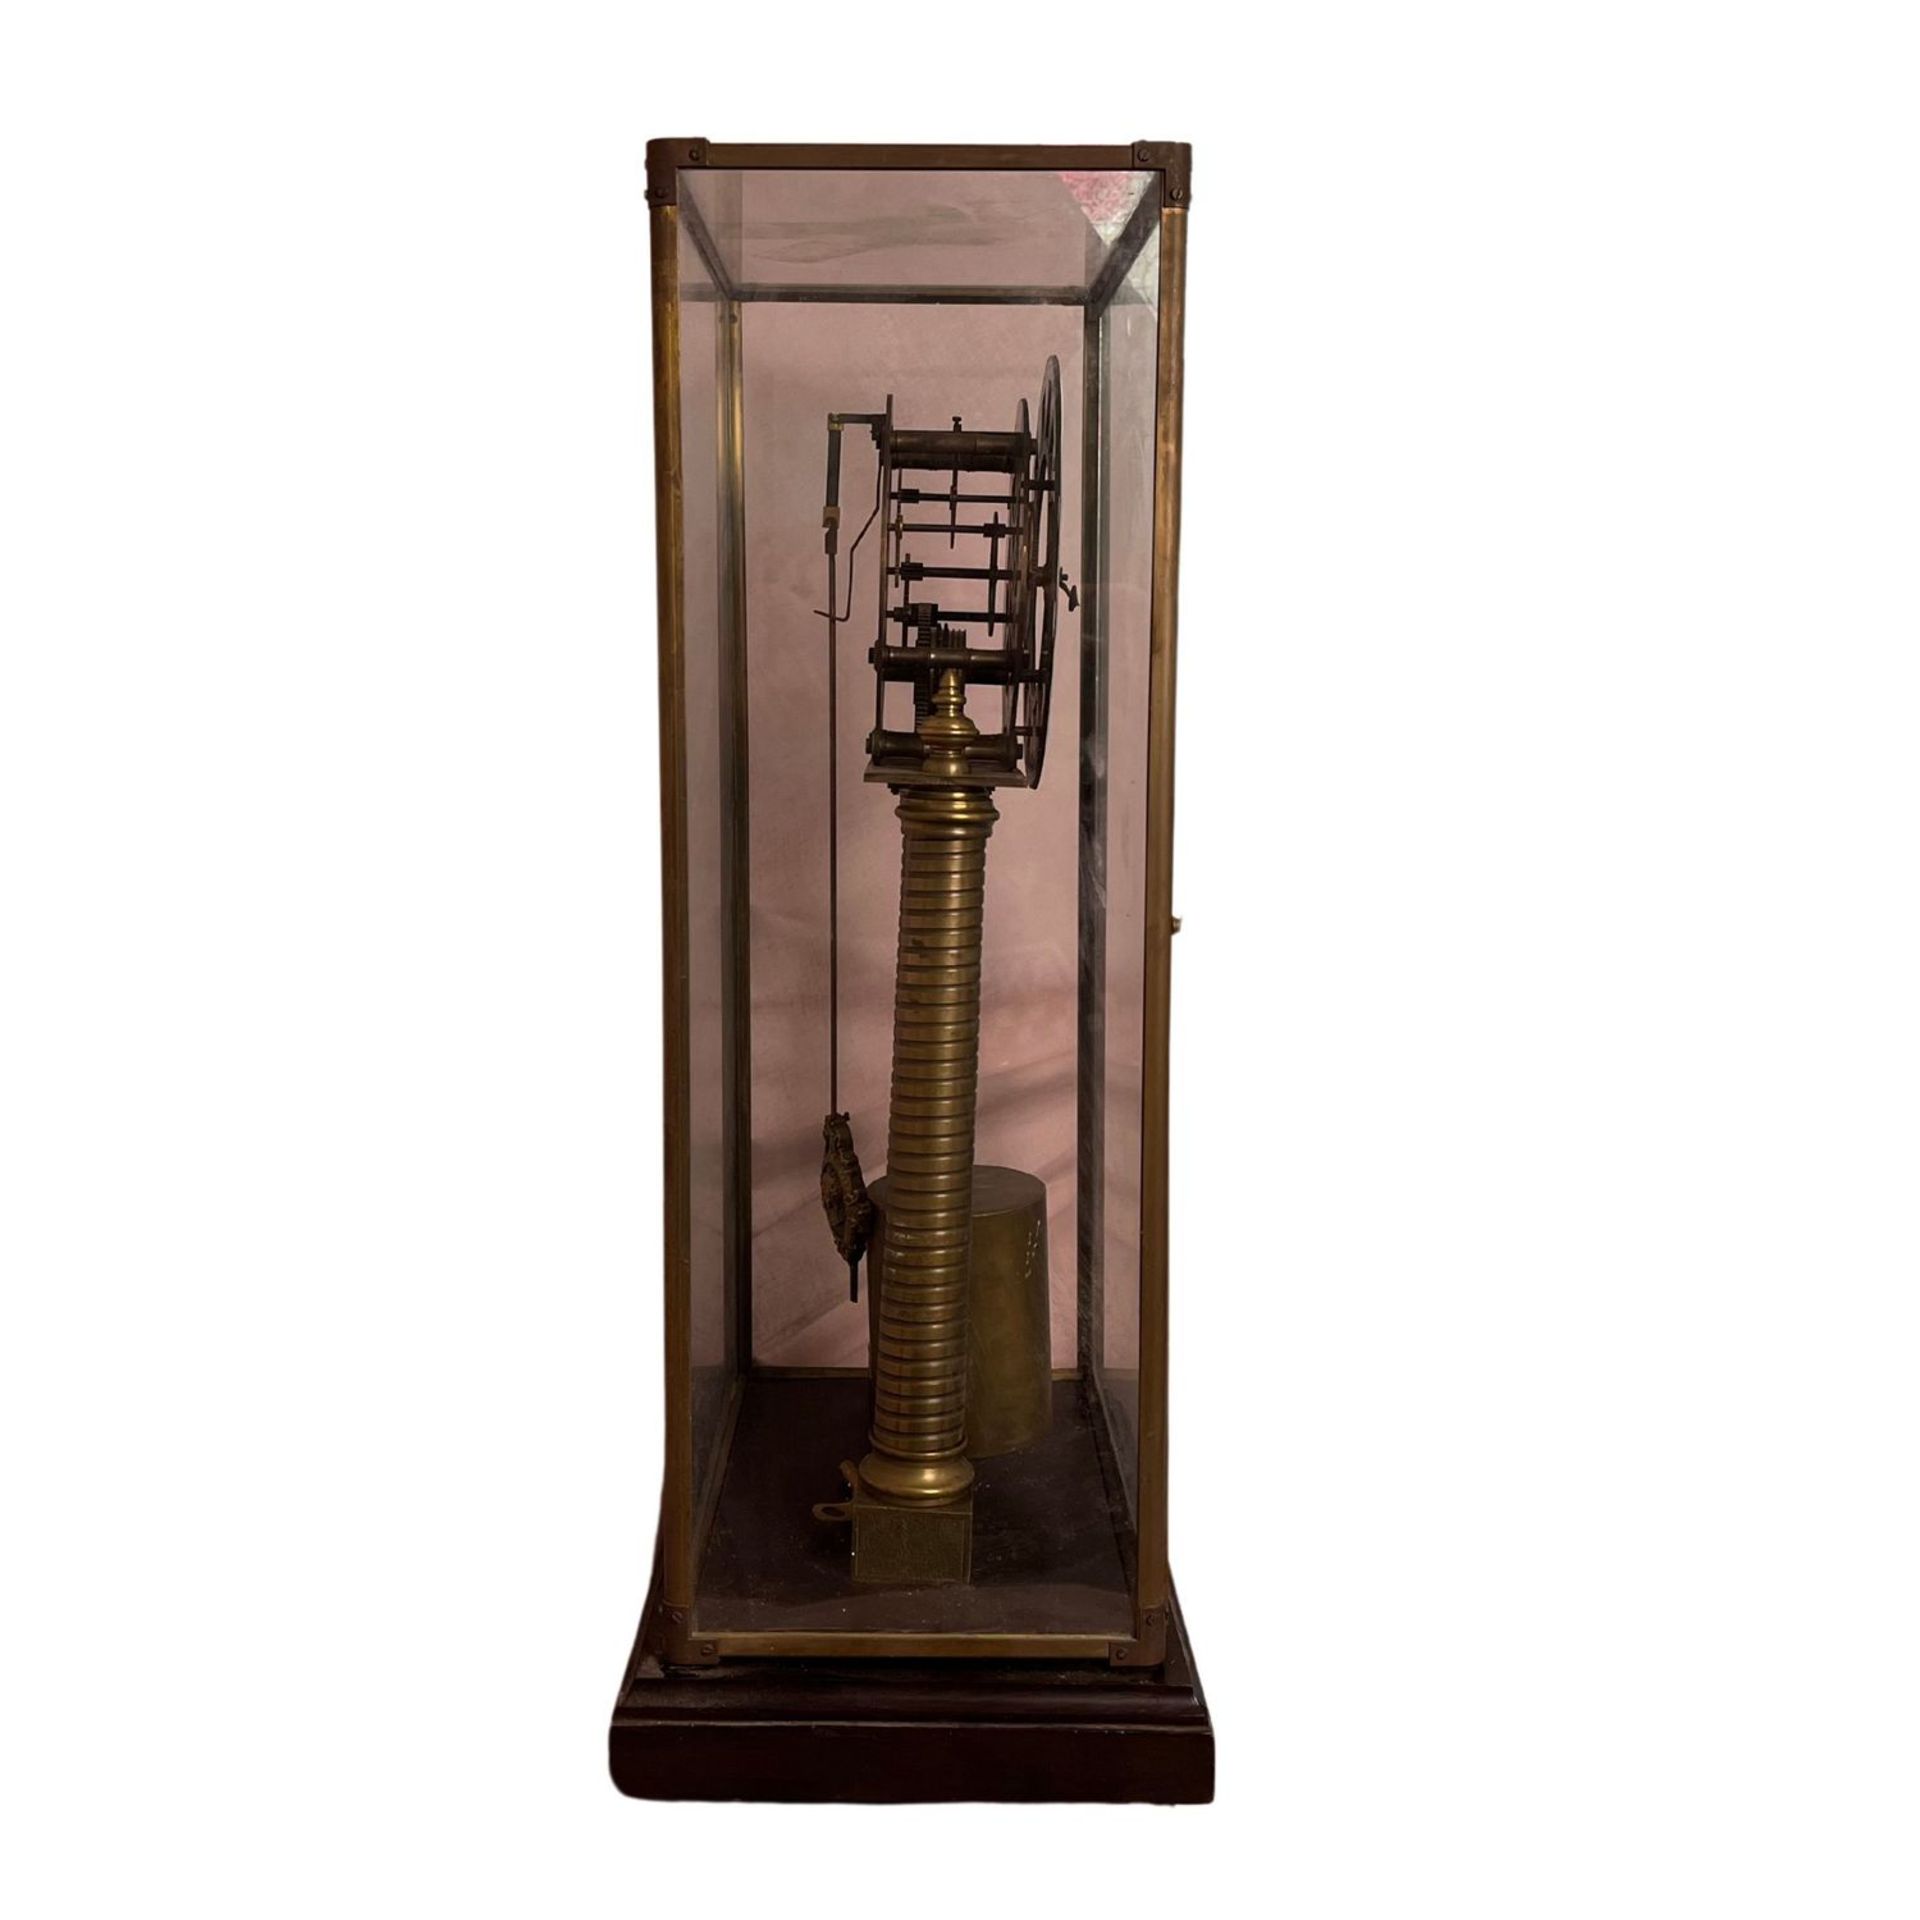 Skeletonized pendulum clock - Image 3 of 5